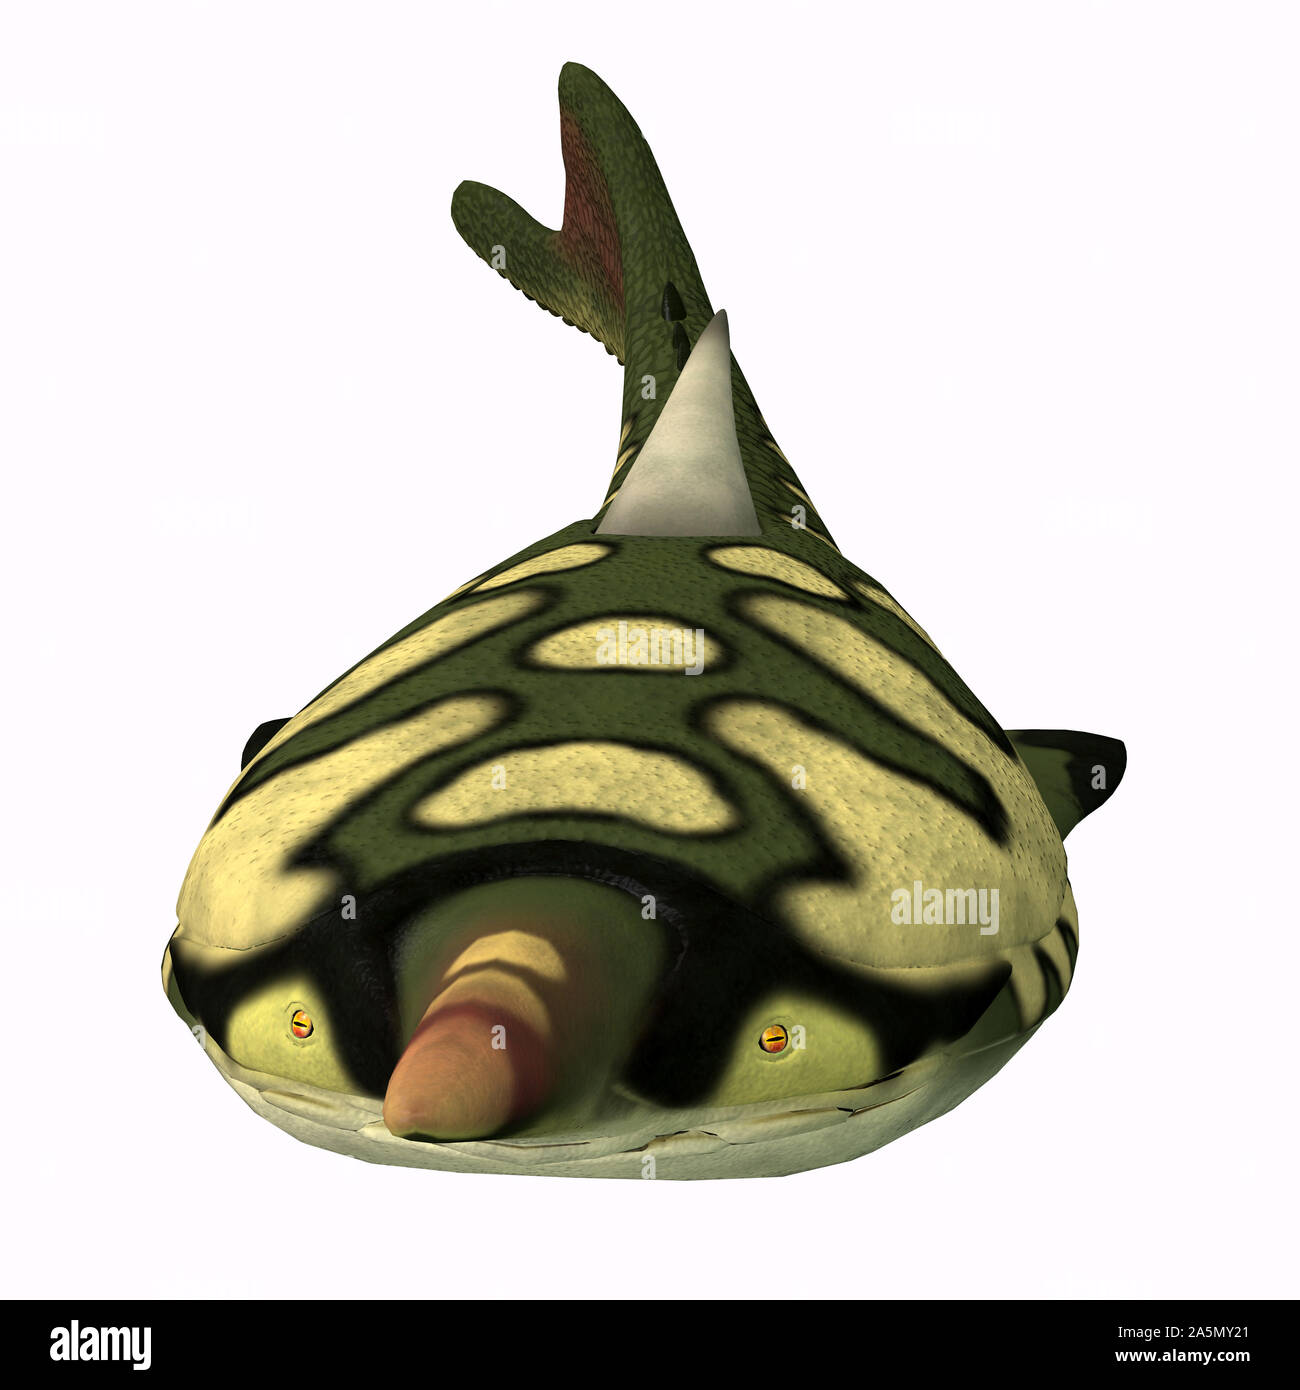 Pteraspis era un carnivoro pesci marini che era stato pesantemente corazzati e visse durante il periodo Devoniano. Foto Stock